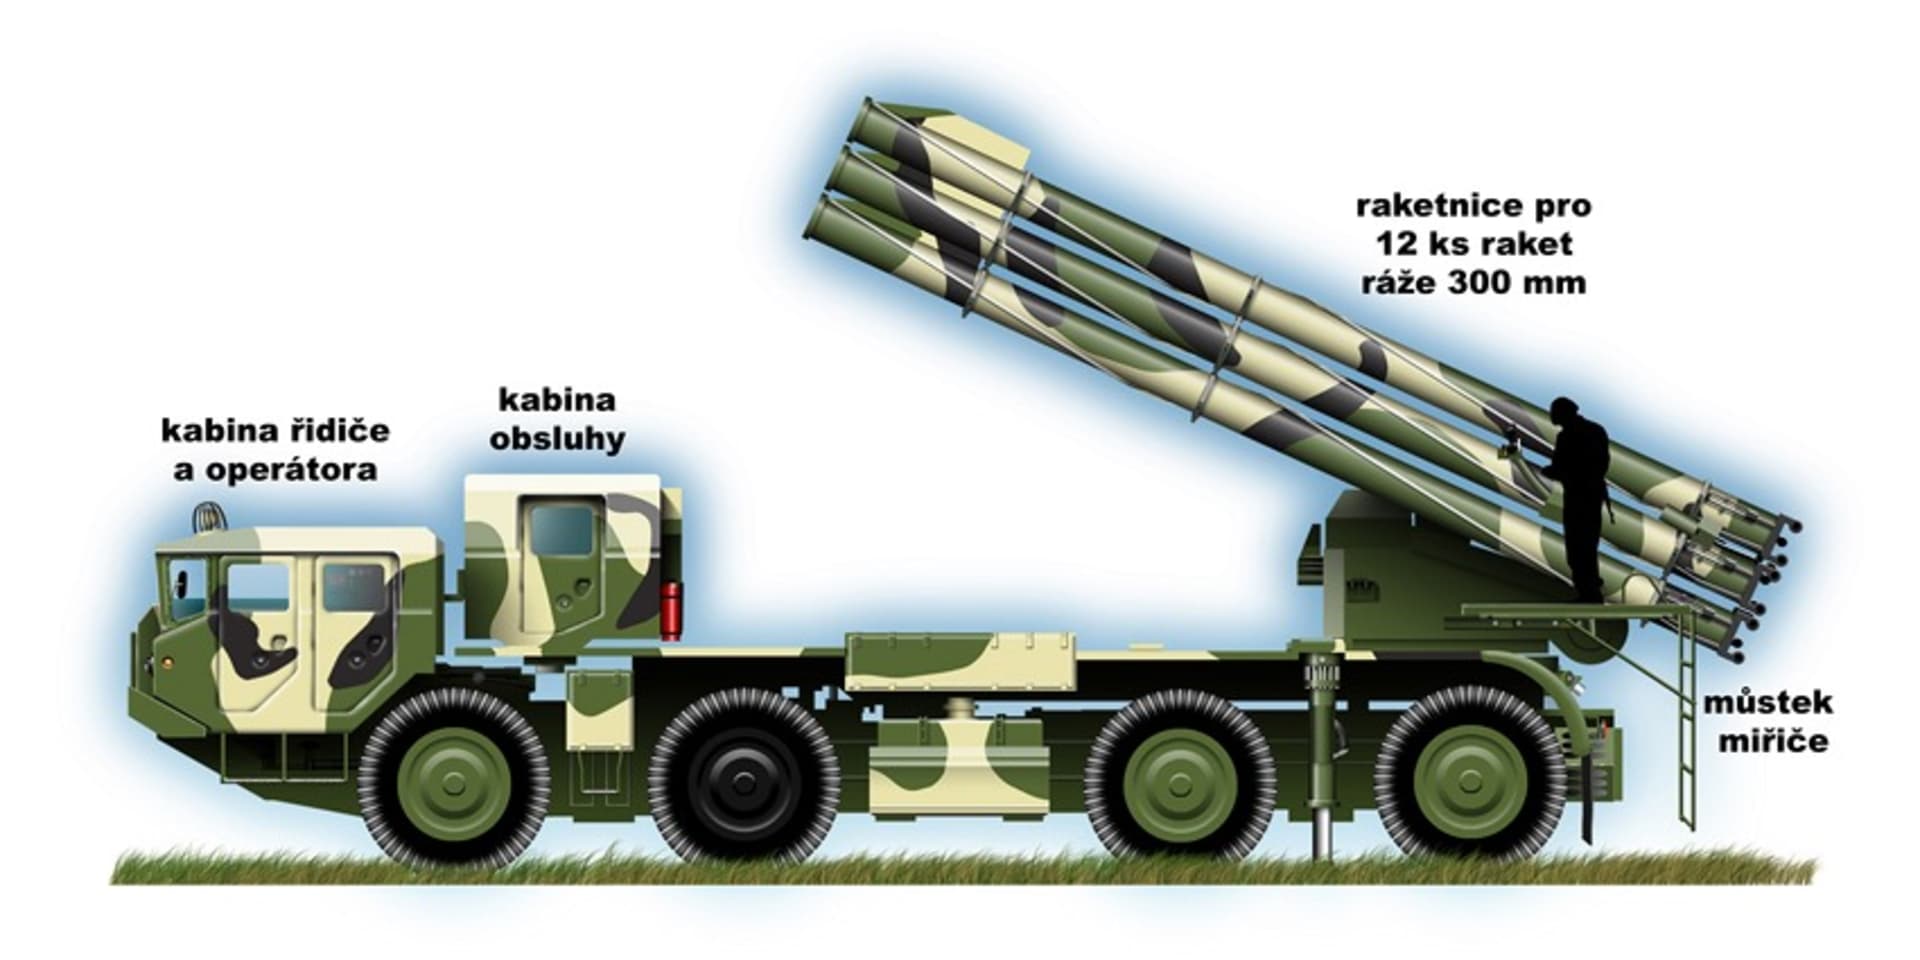 Raketomet BM-30 Směrč vstoupil do služby v roce 1989